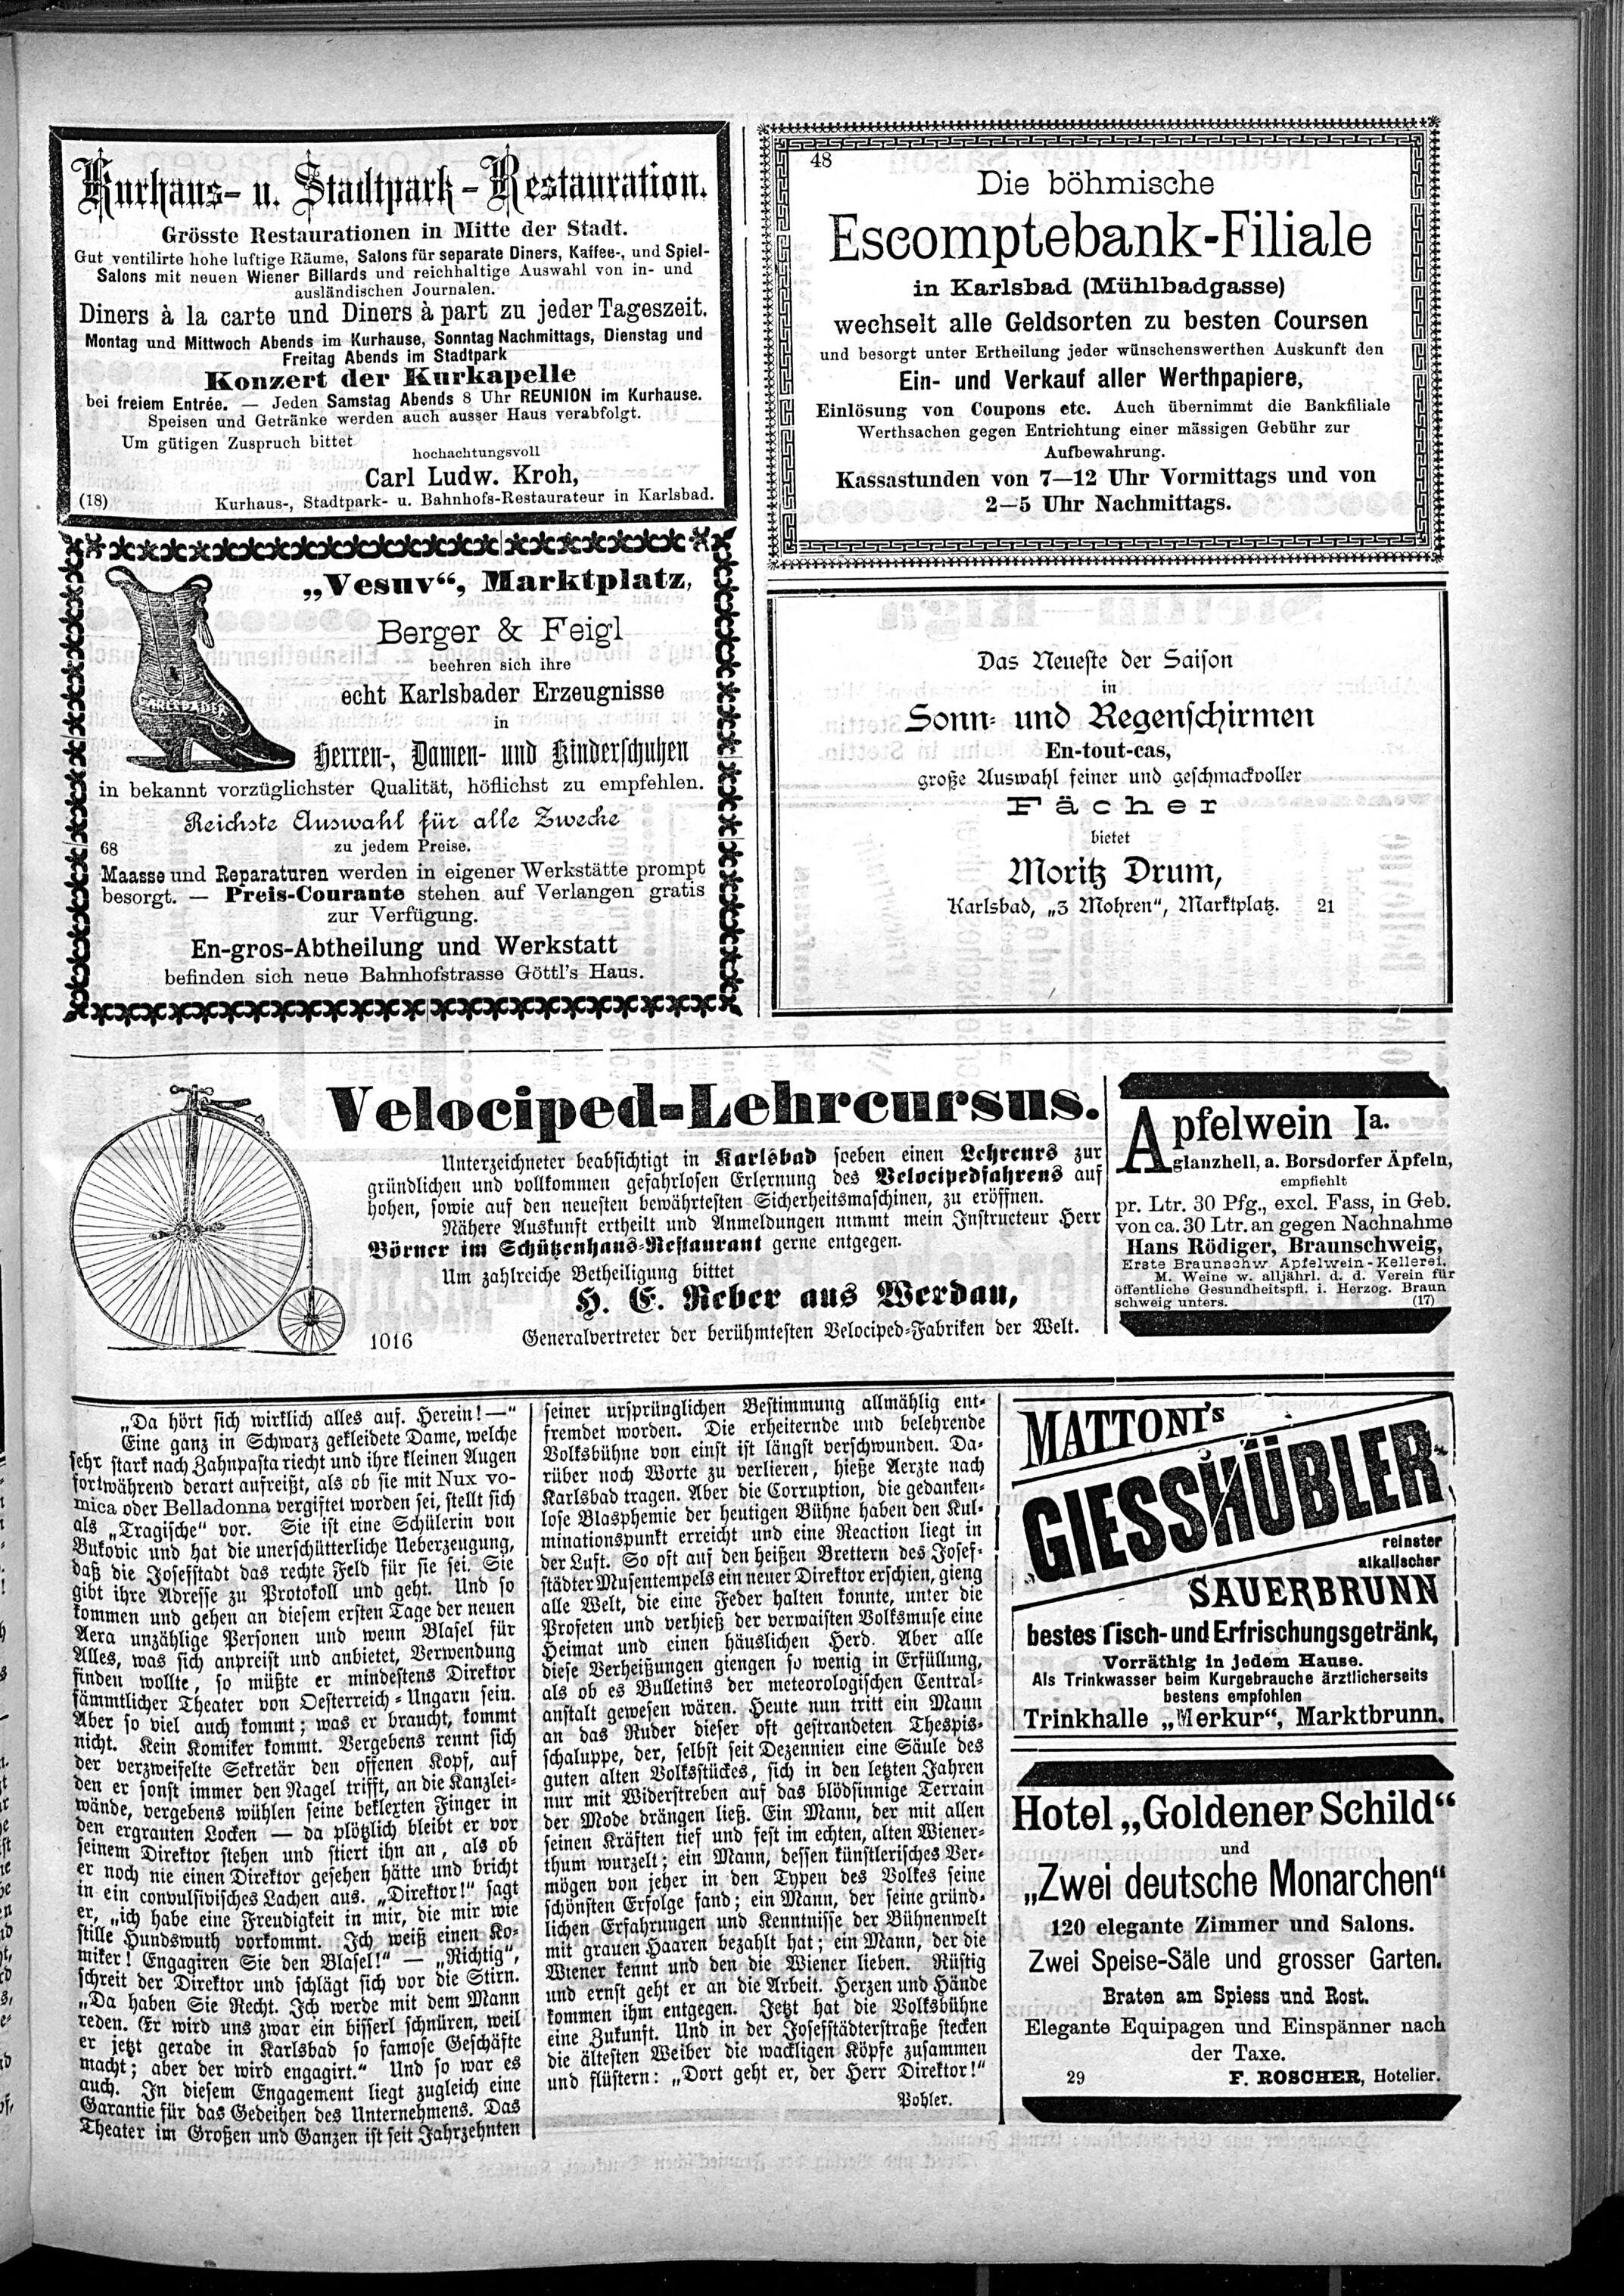 3. karlsbader-badeblatt-1885-06-21-n45_1055